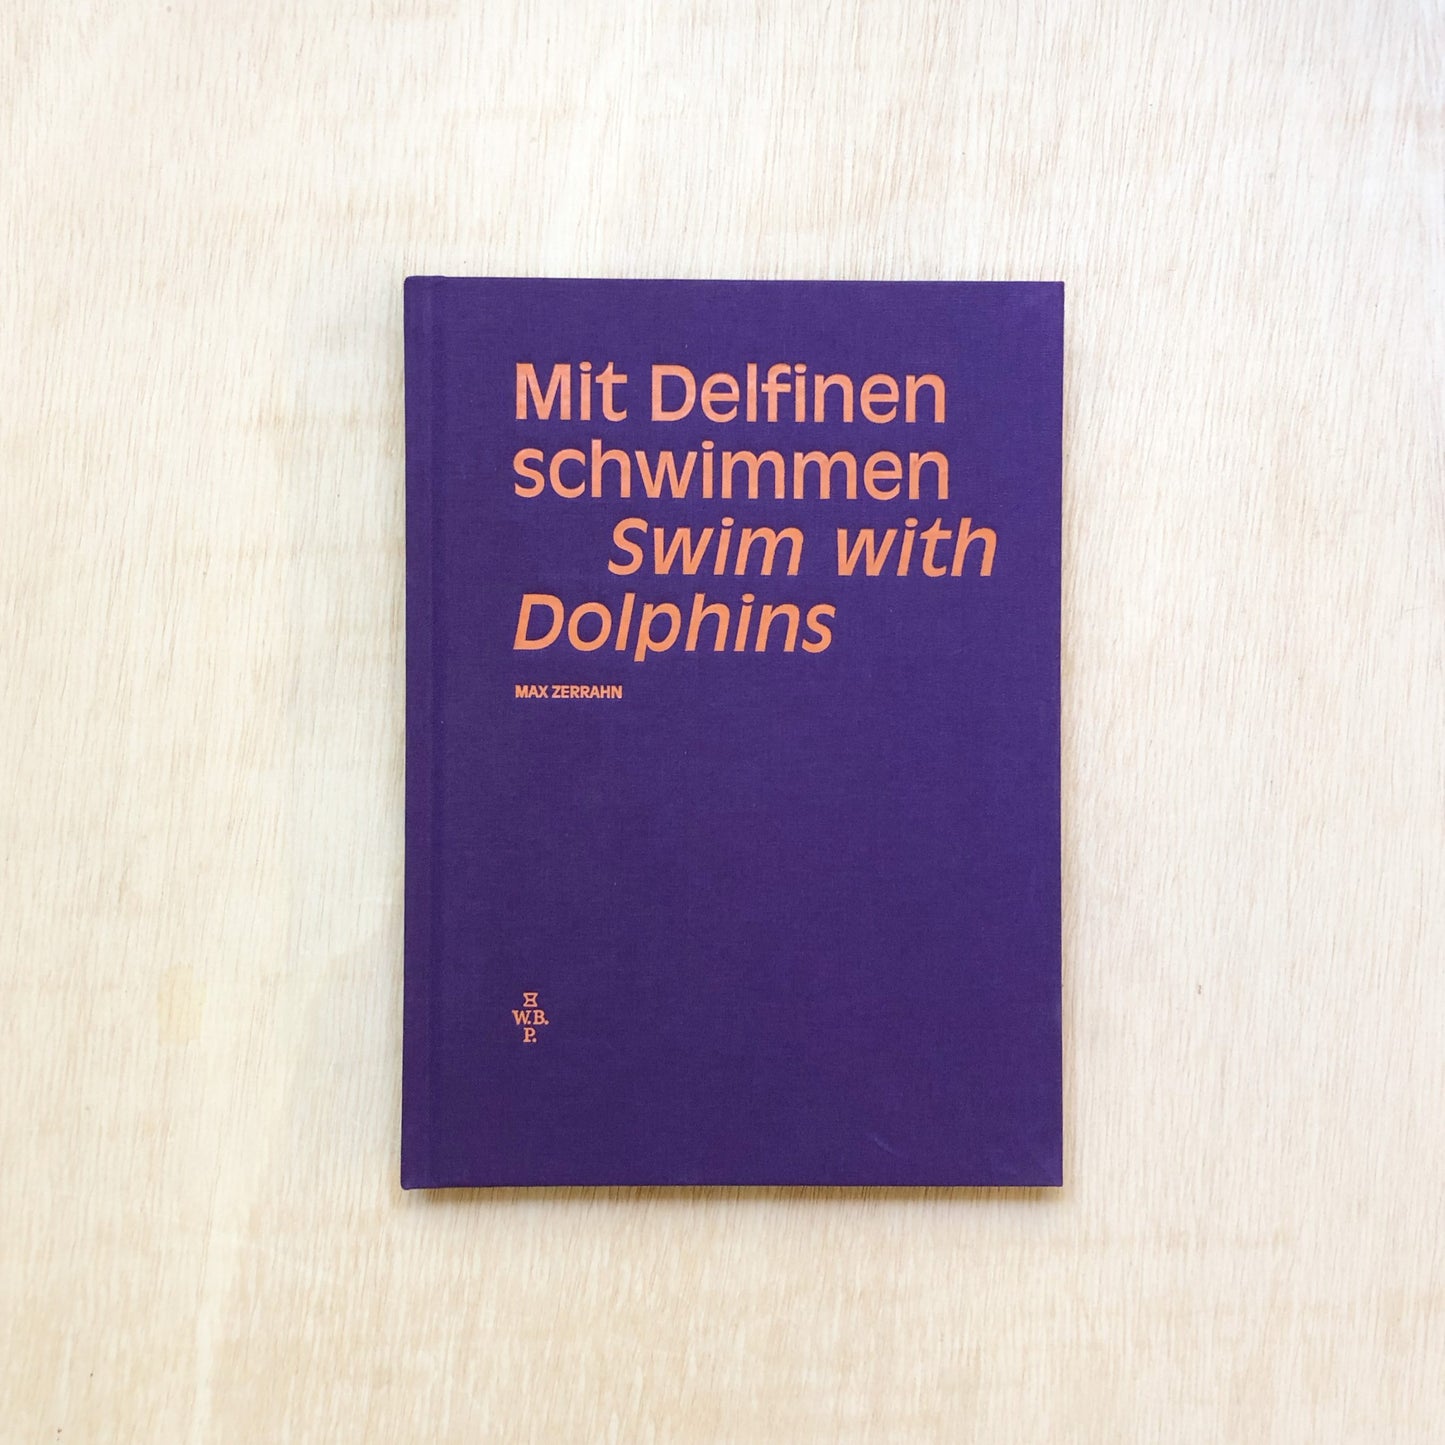 Mit Delfinen schwimmen - Swim with Dolphins